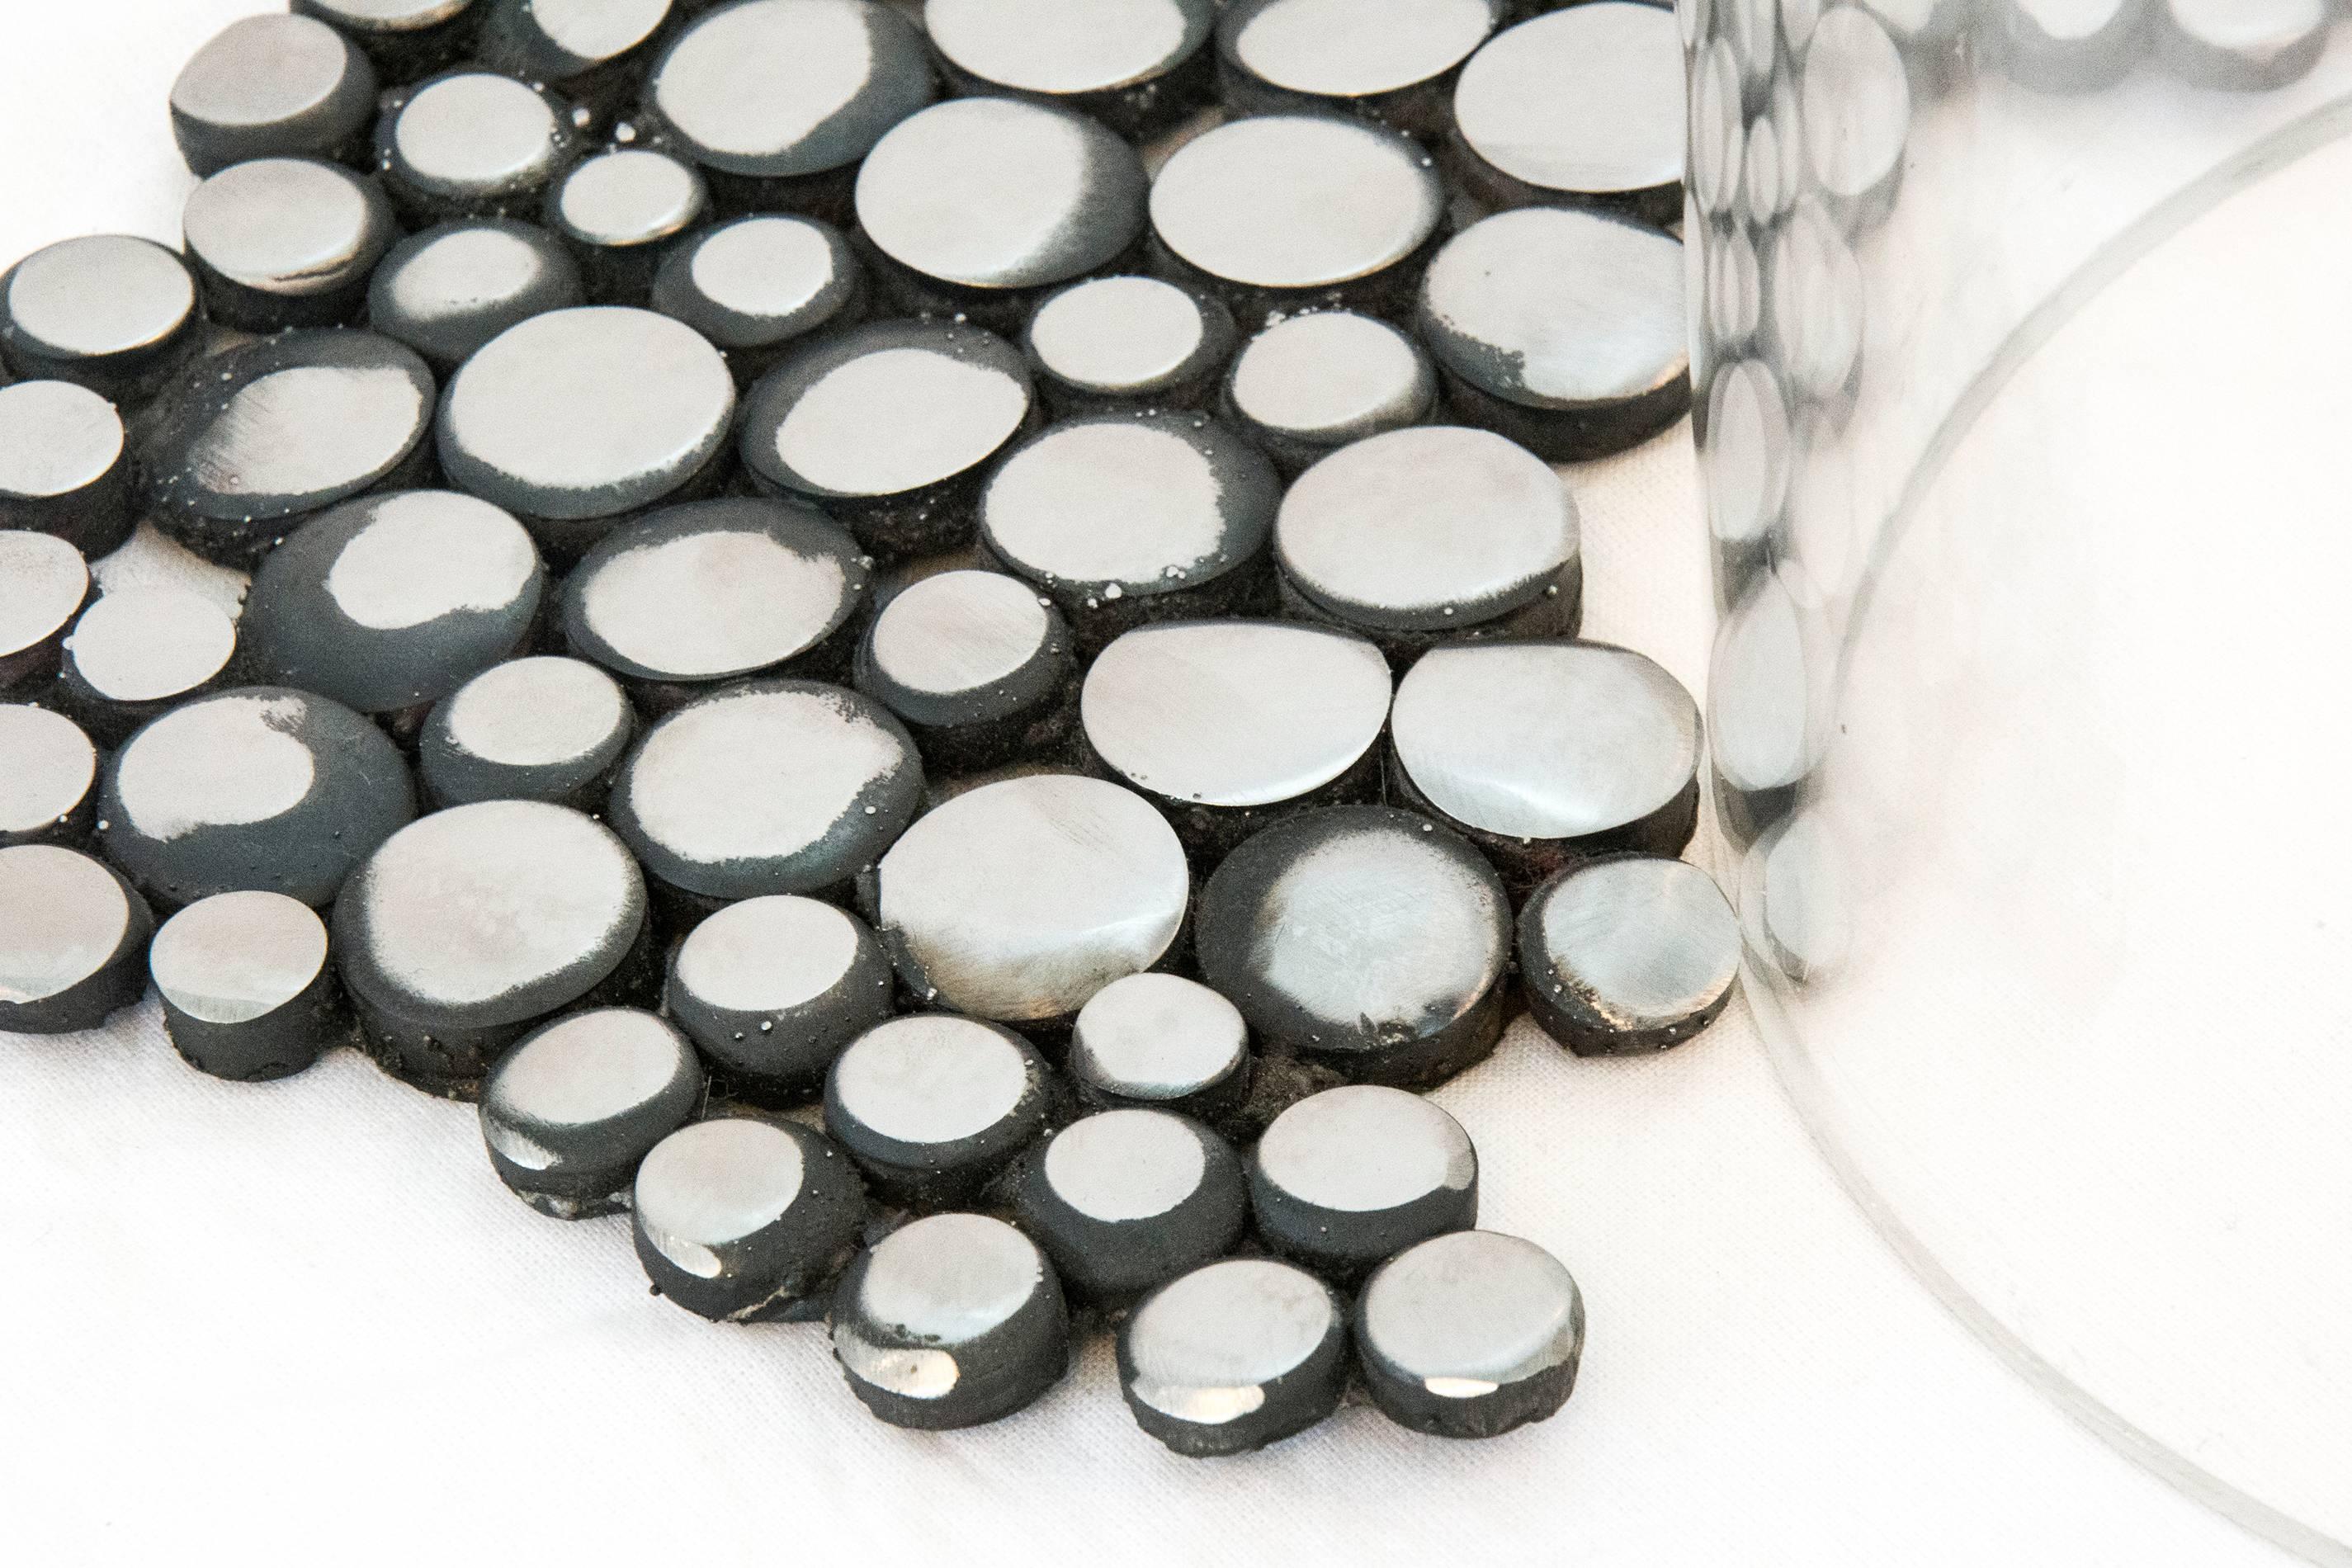 Composée de nombreux petits disques en acier inoxydable, une tête creuse flottant sur un cylindre en plexiglas transparent semble fondre, les disques diminuant de taille et formant des 